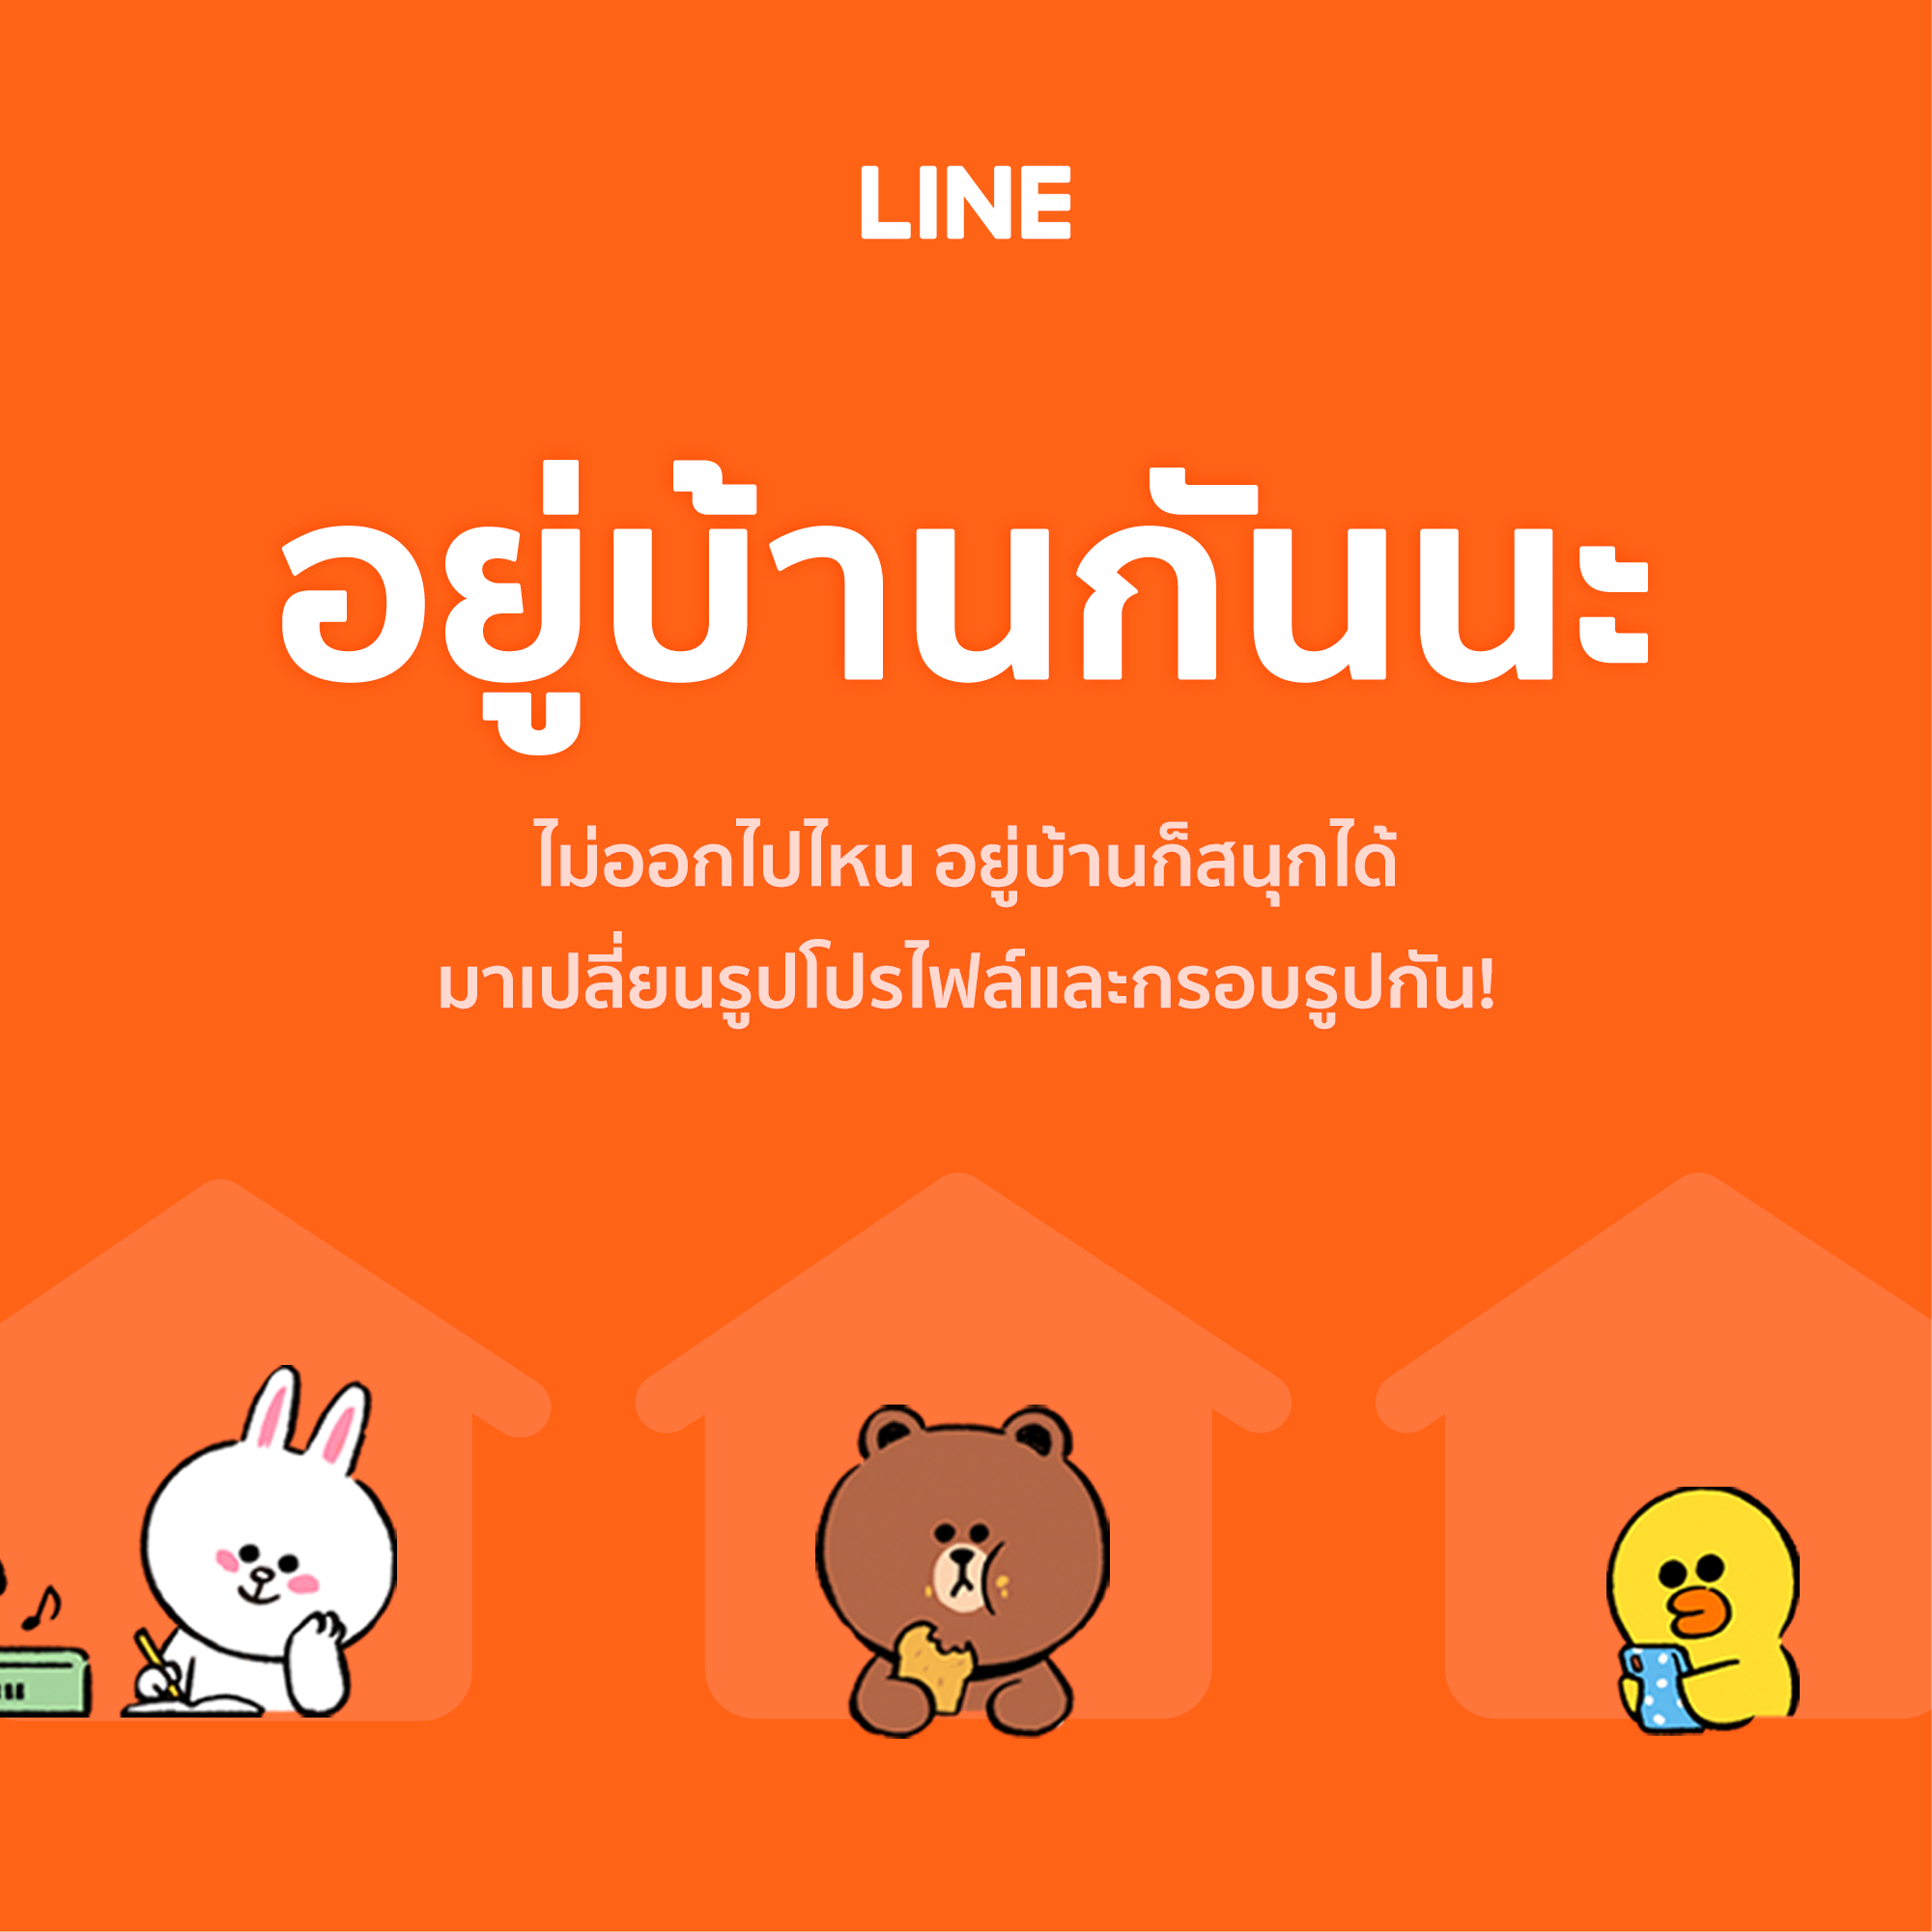 LINE ประเทศไทย ร่วมรณรงค์เชิญชวนให้ทุกคน อยู่บ้าน แบบไหนให้สนุก ด้วยการเปลี่ยนกรอบรูปโปรไฟล์แชทและธีมหน้าจอน่ารักกว่า 10 แบบ